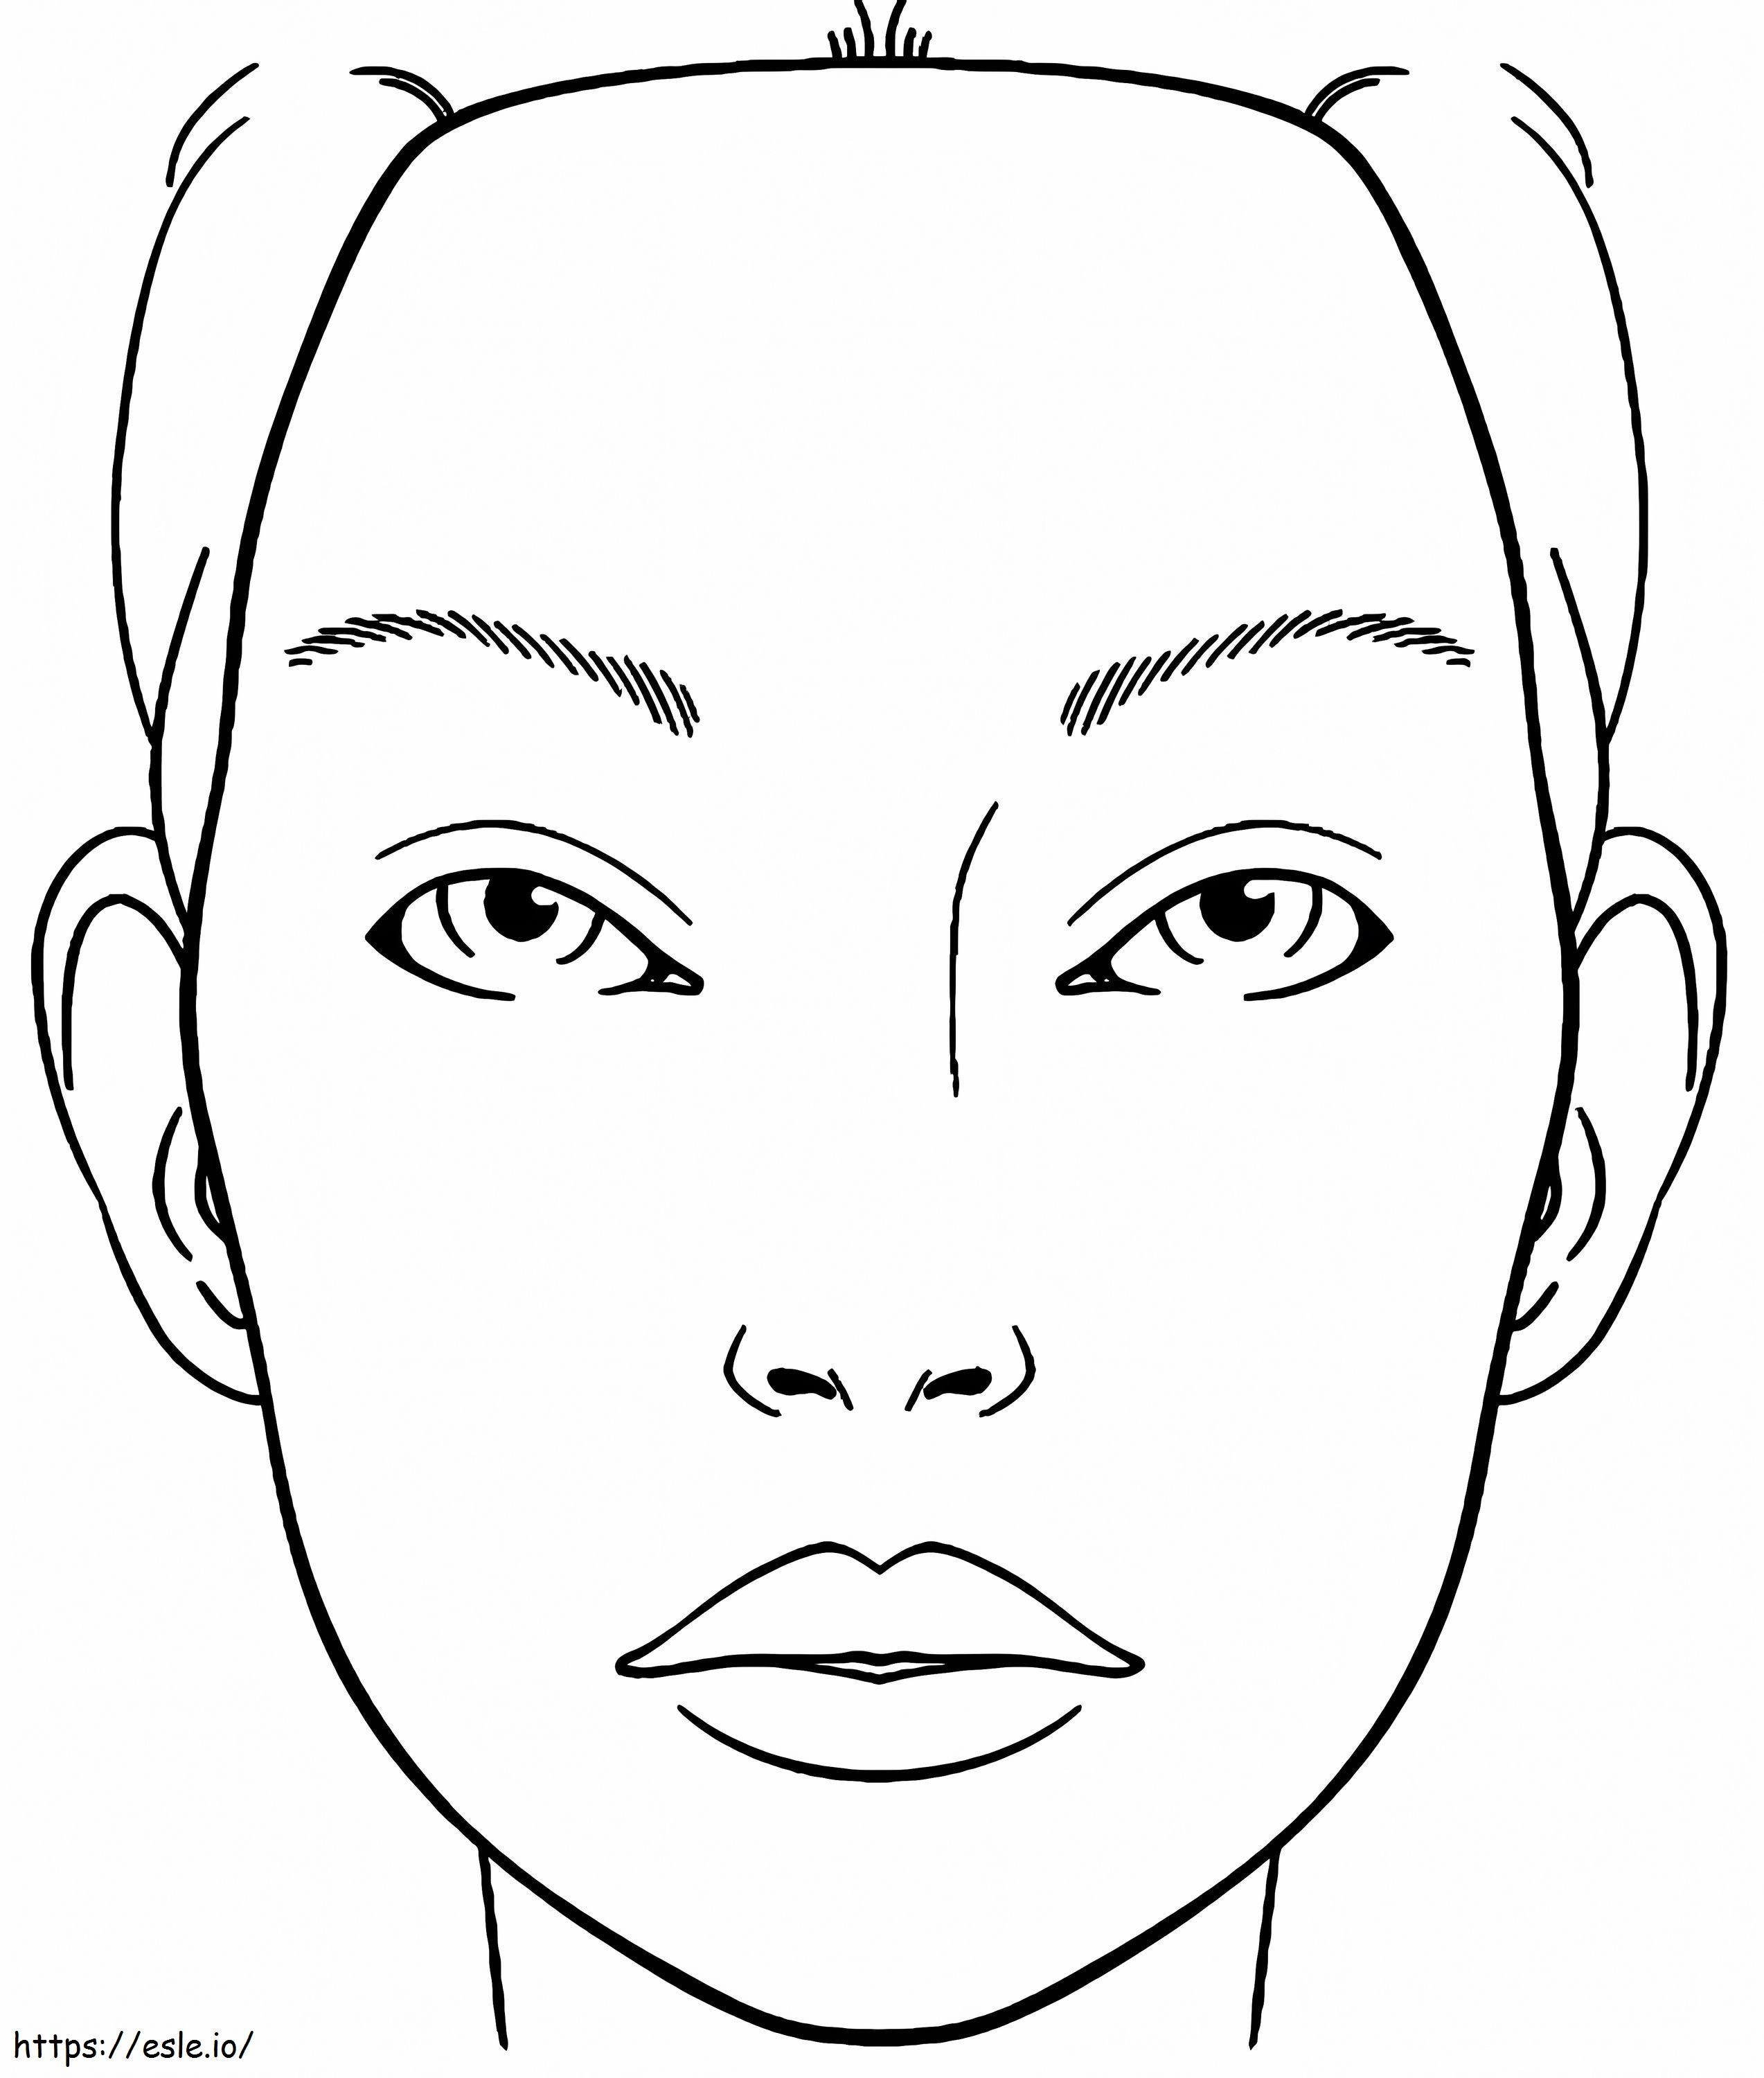 Make-up-Gesicht ausmalbilder